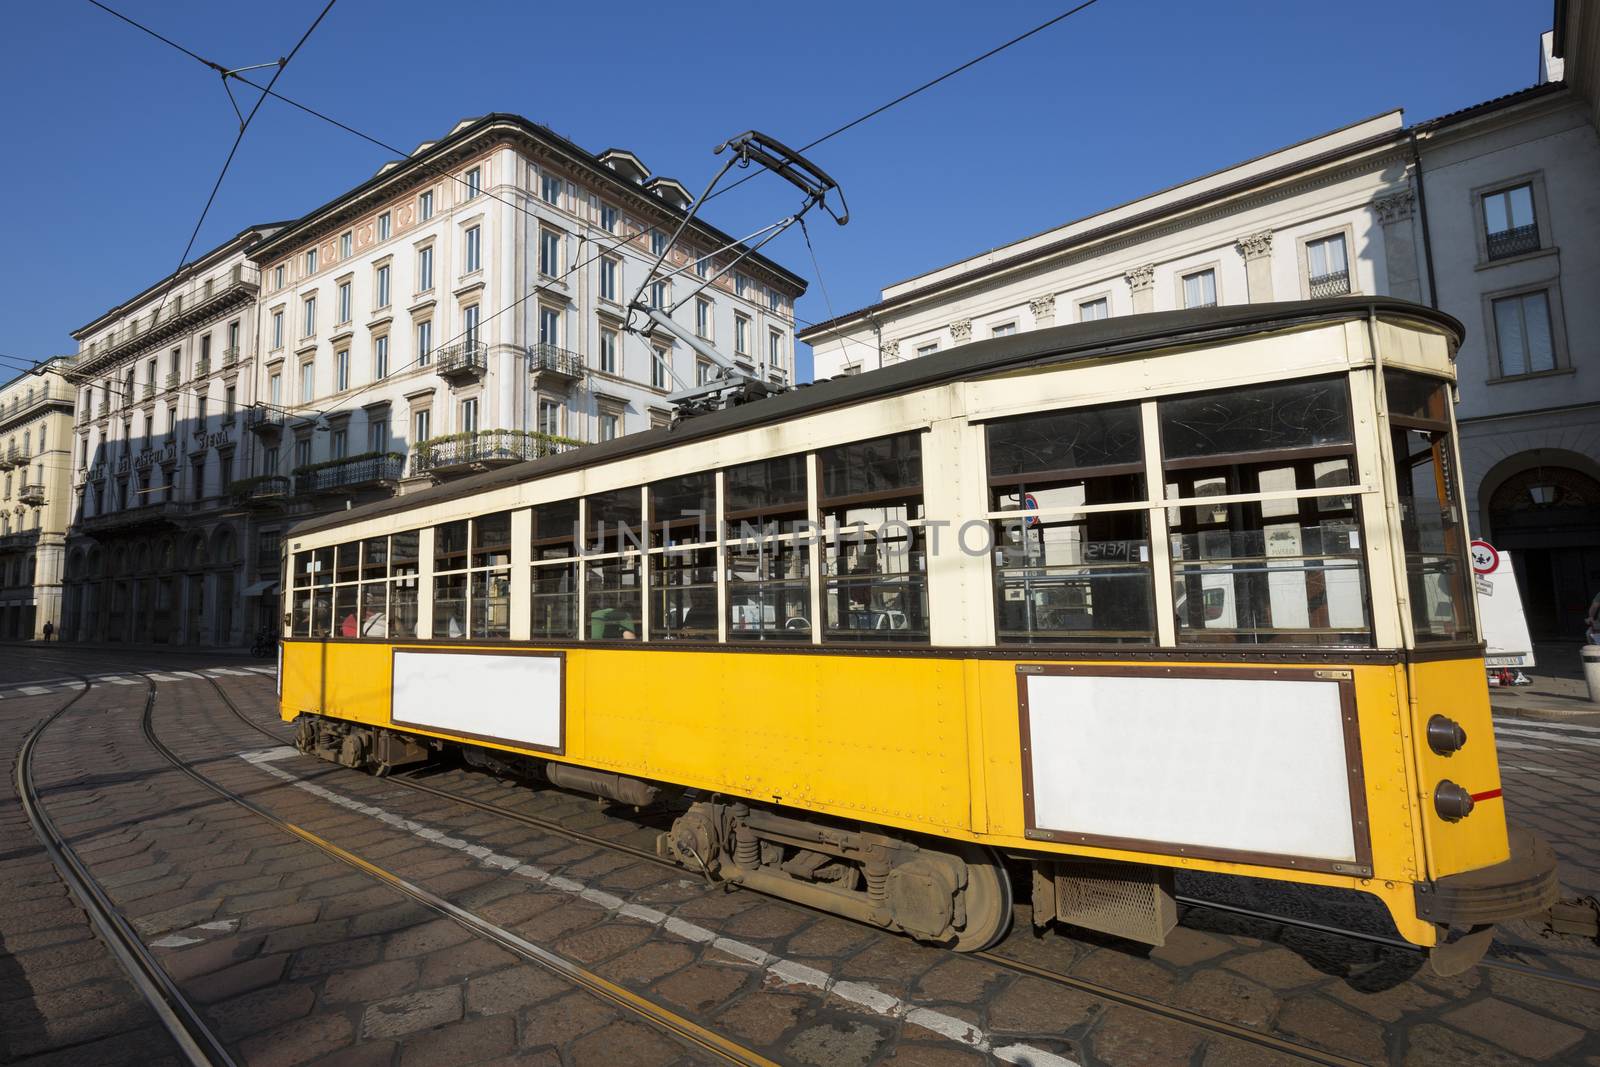 Vintage tram by vwalakte